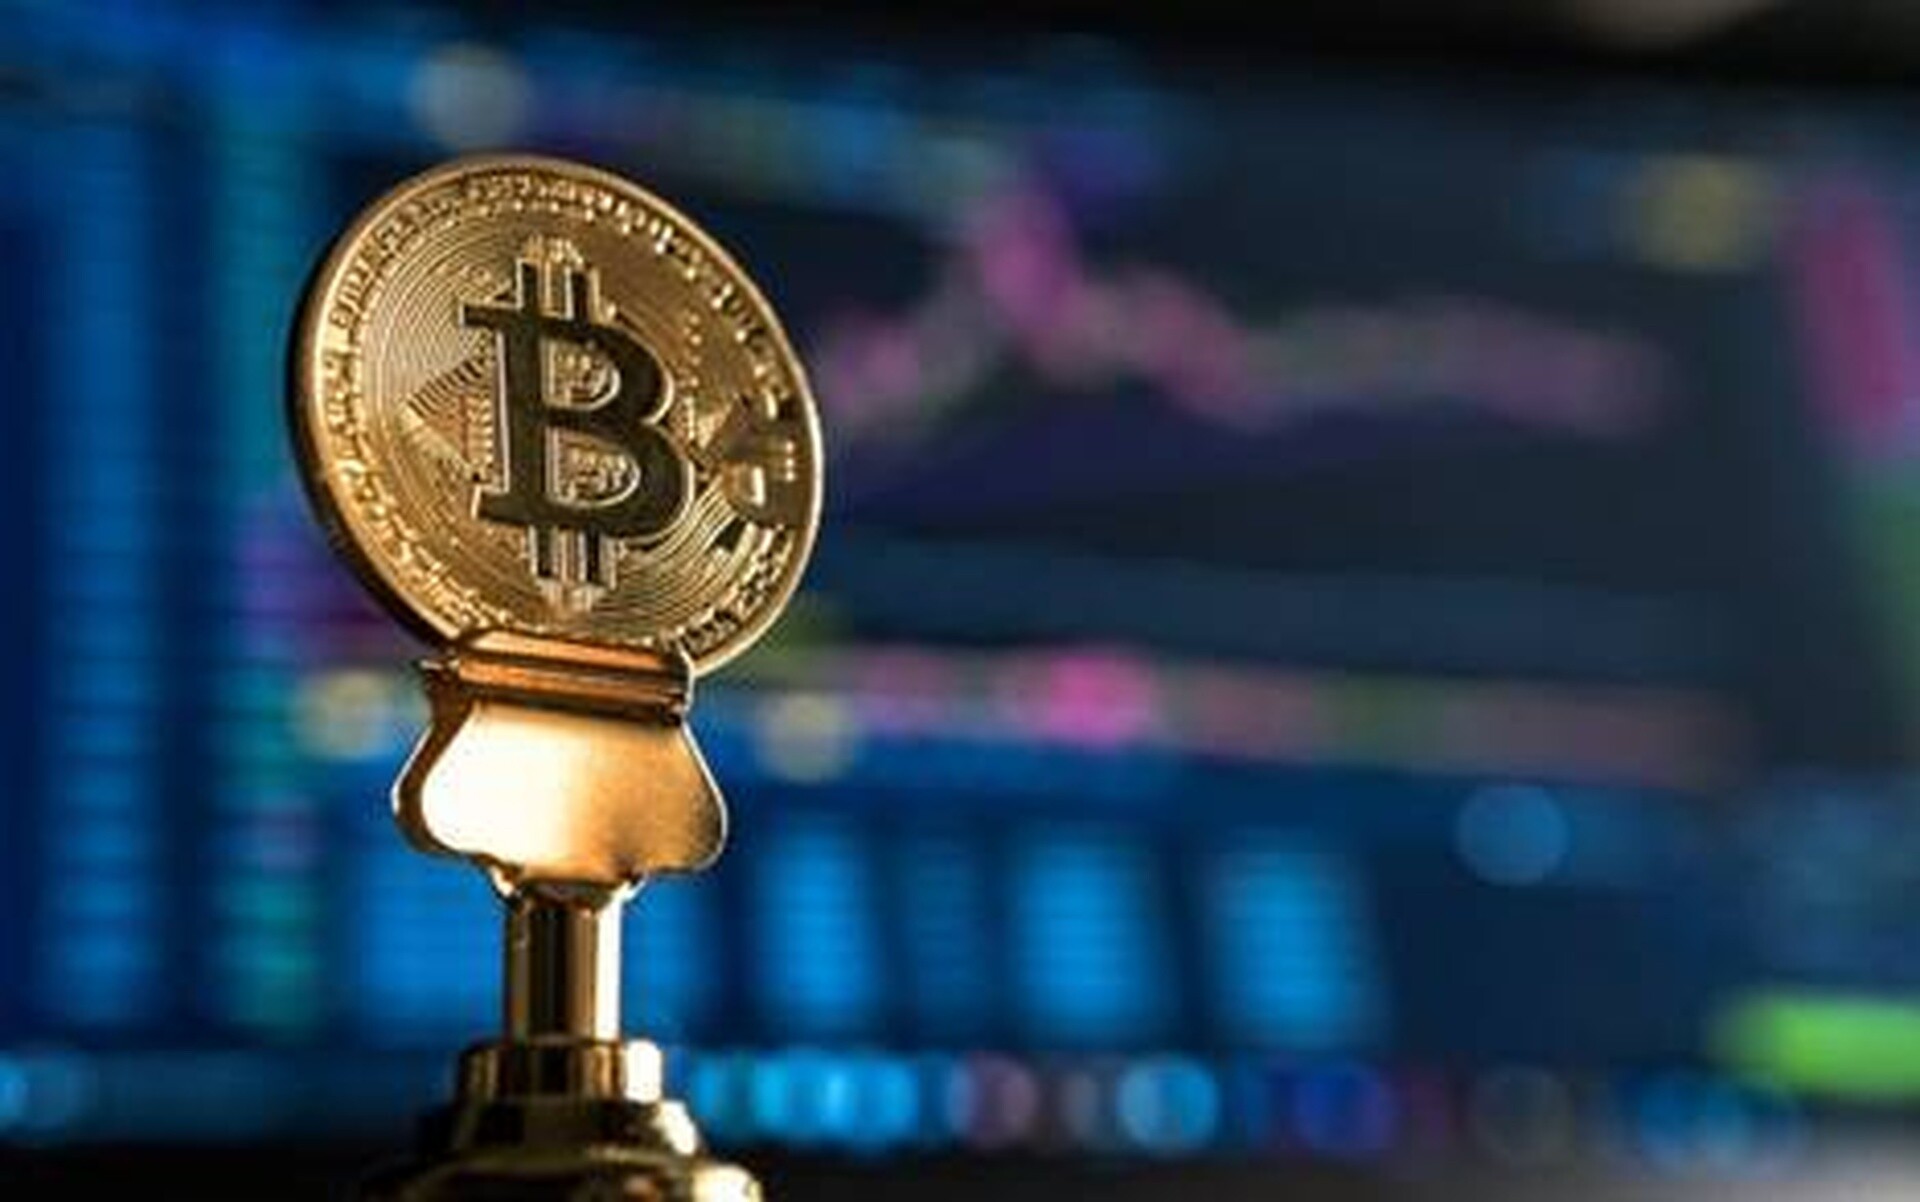 Τι να περιμένουμε μετά το Bitcoin Halving σύμφωνα με τις προβλέψεις τιμών;